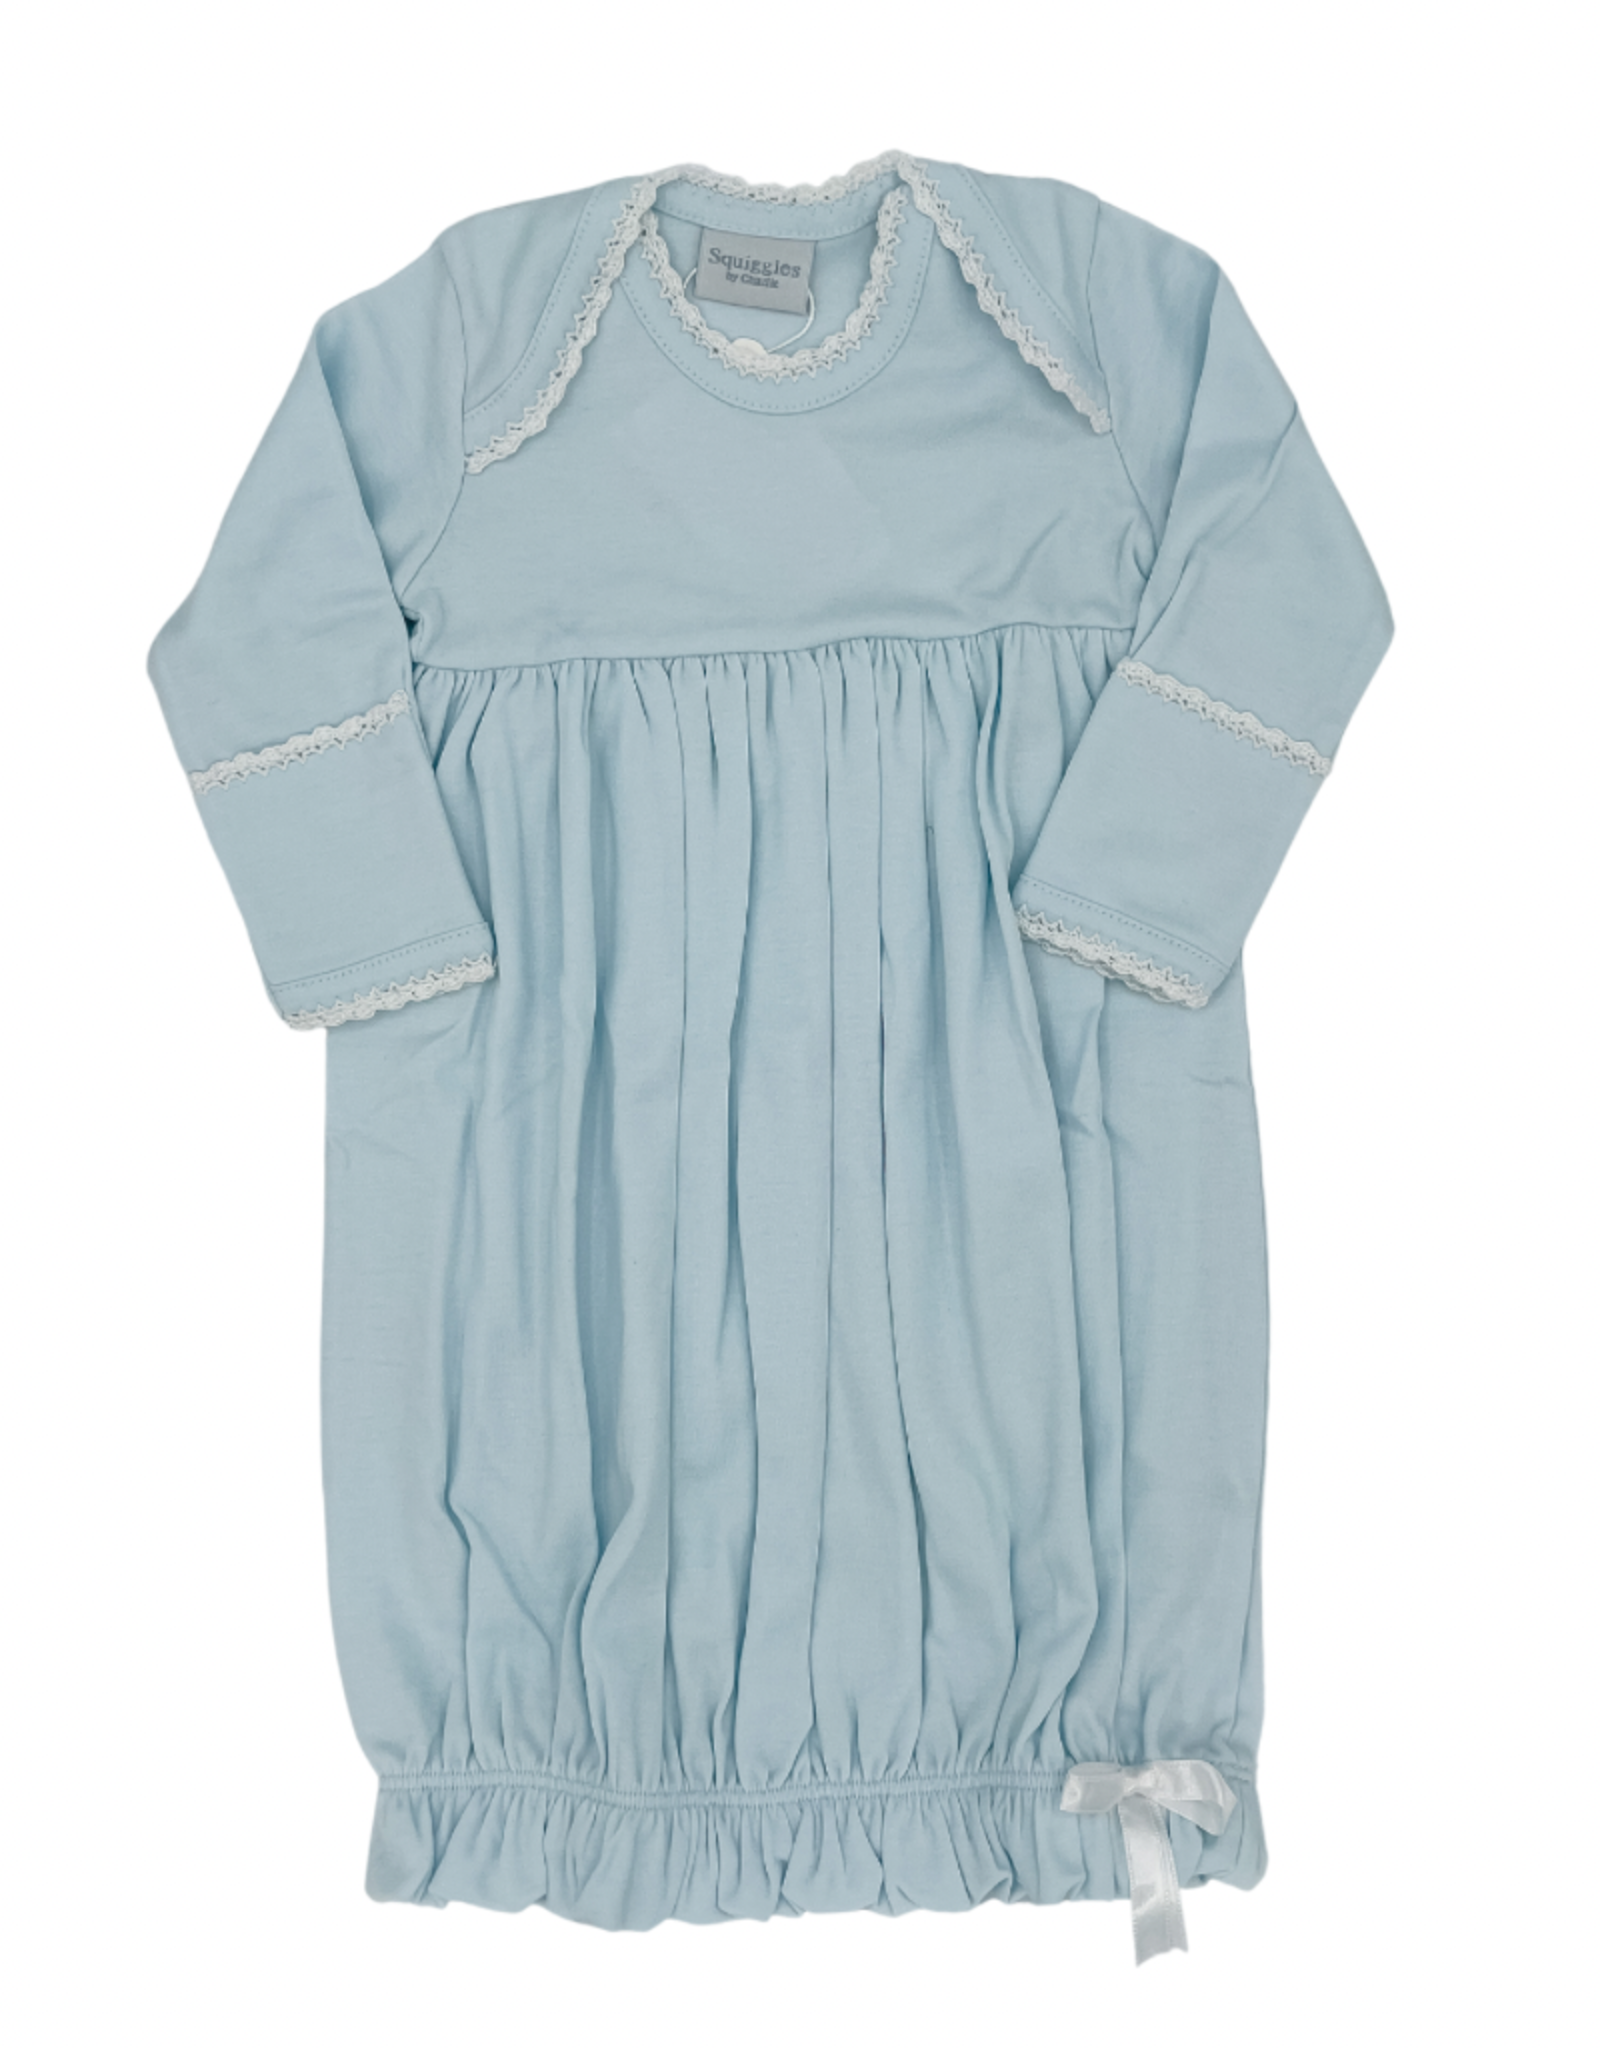 Lap Shoulder Gown- Blue/White